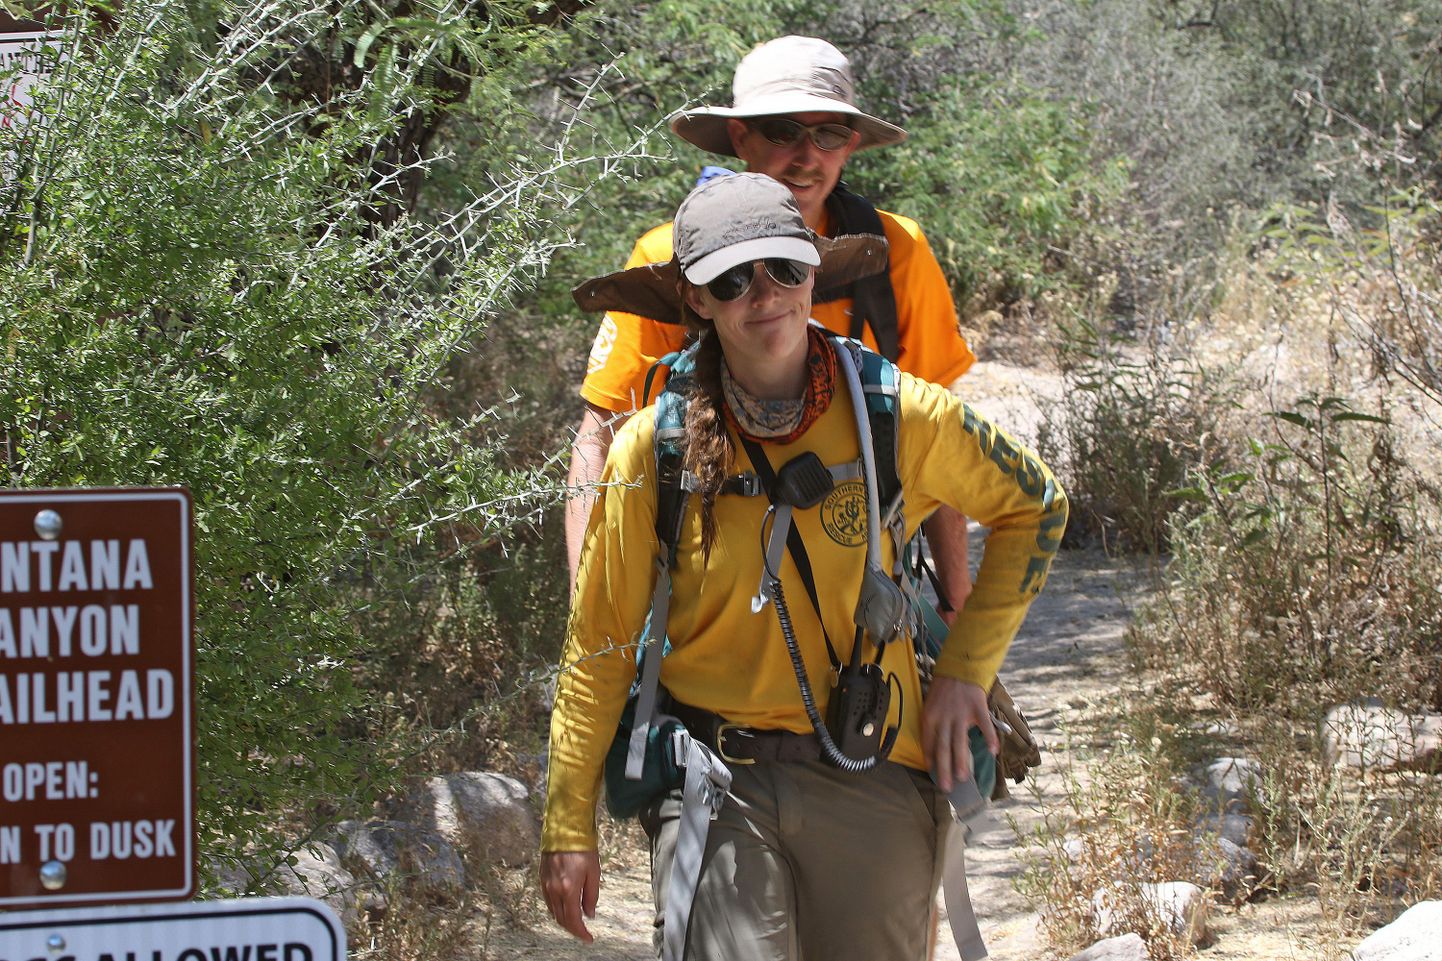 Kara O'Brien and Jeff Mayhew naasmas matkalt Ventana kanjoni juurde Lõuna-Arizonas. Pühapäeval lõppes samas piirkonnas matkanud kolme Euroopast pärit mehe jaoks matk õnnetult - üks meestest on surnud, teine kadunud ja kolmas hetkel haiglas.